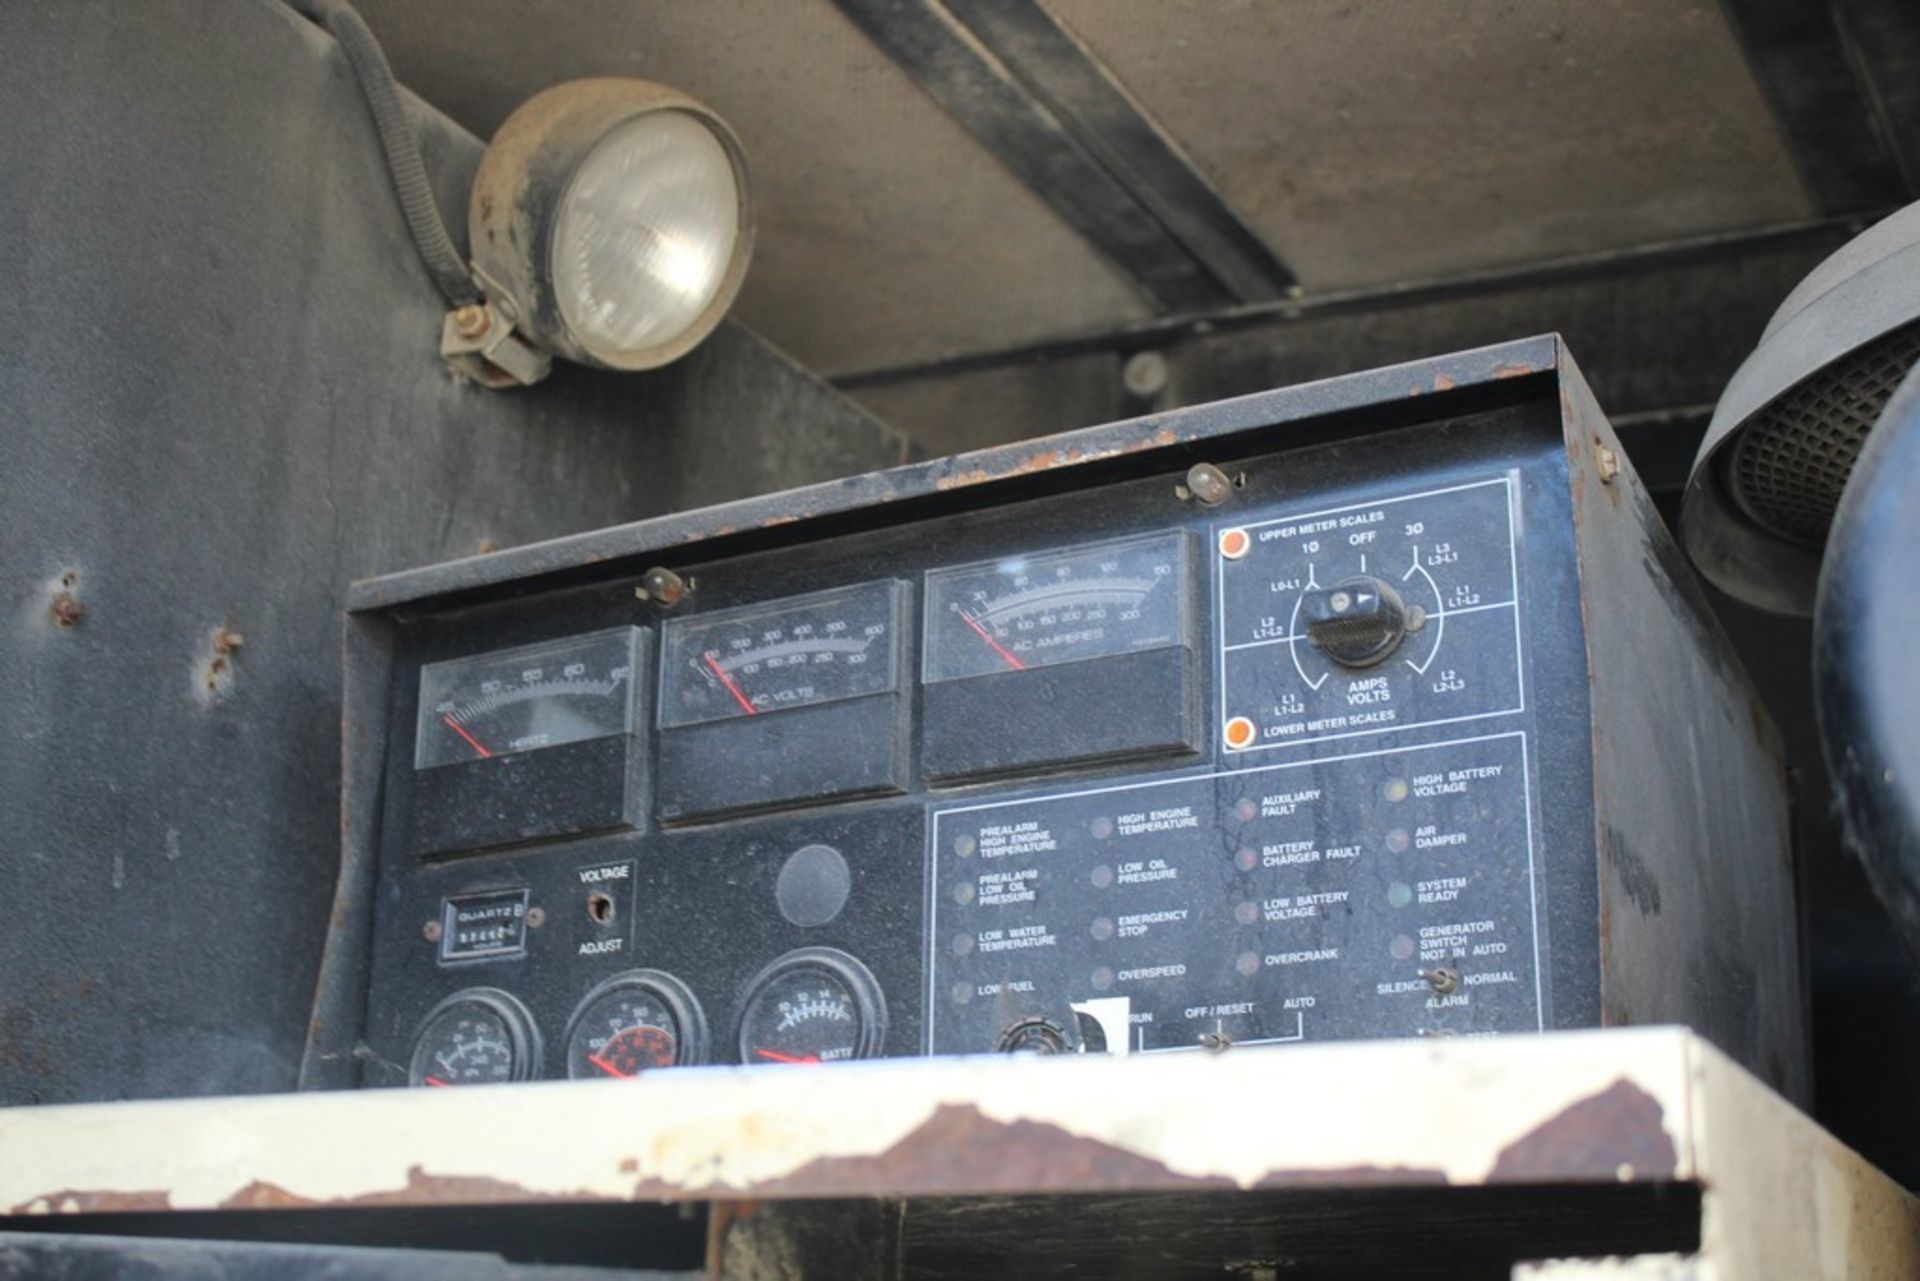 Kohler 58 KW Model 60REOZJBT Generator, s/n 2058901, 9745 Hours on Meter, on Trailer - Image 4 of 8